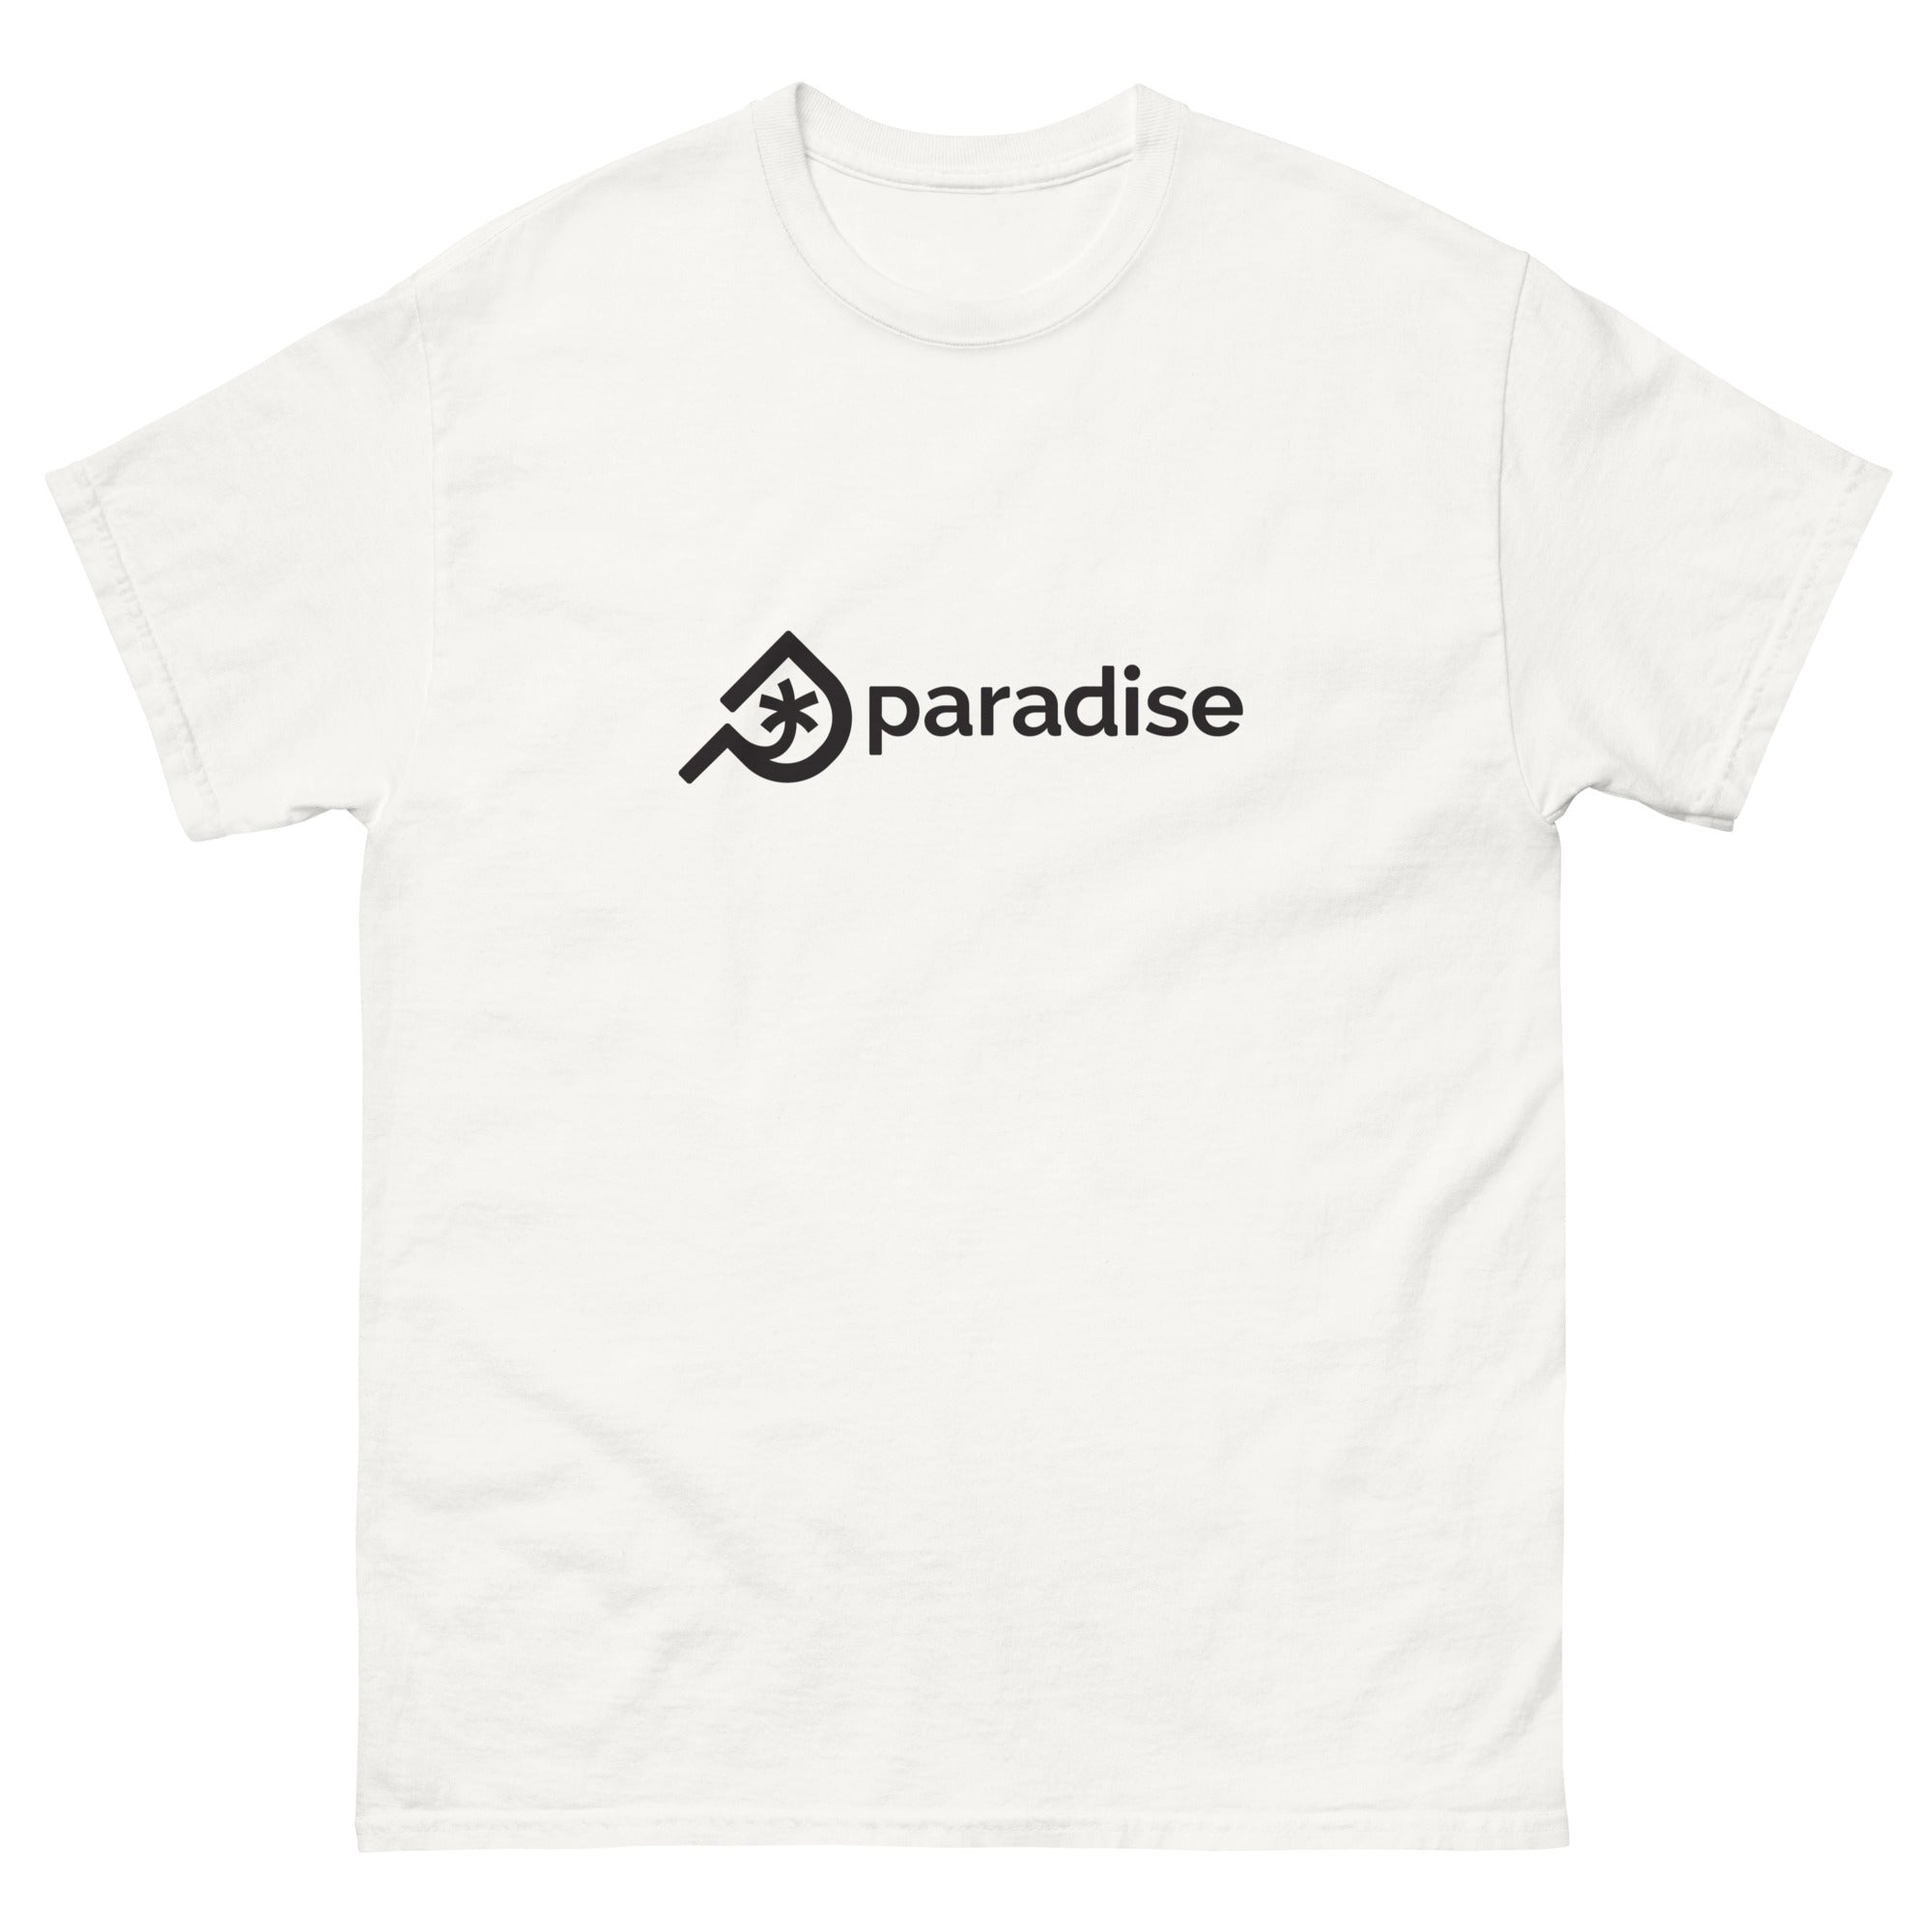 Paradise Skis logo shirt